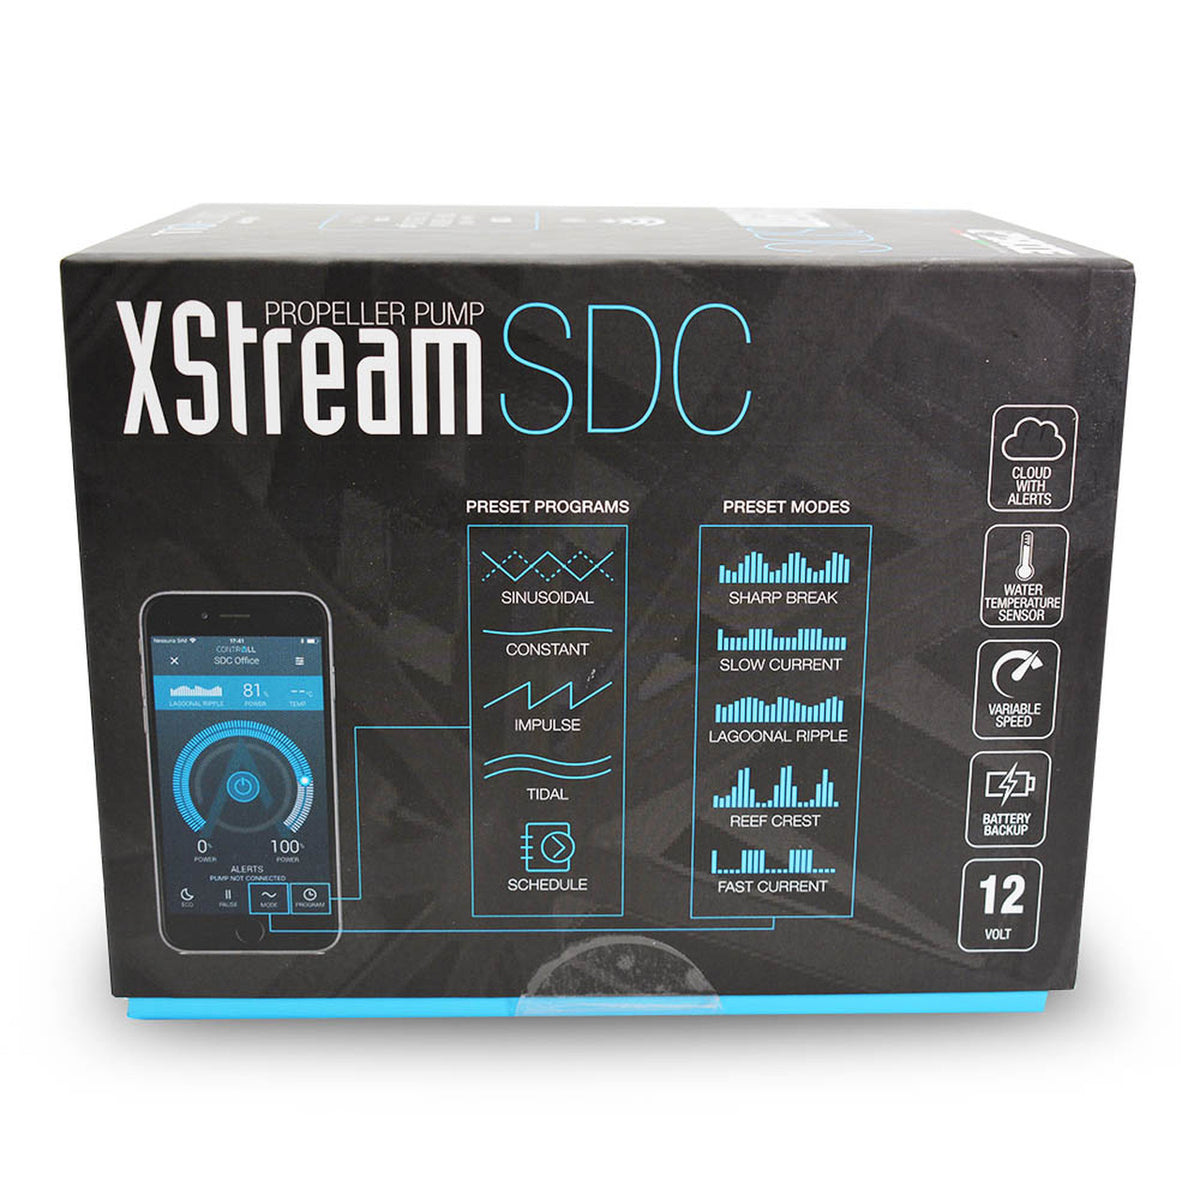 Sicce XStream SDC WIFI Pump 1.000-8.500 L/hr